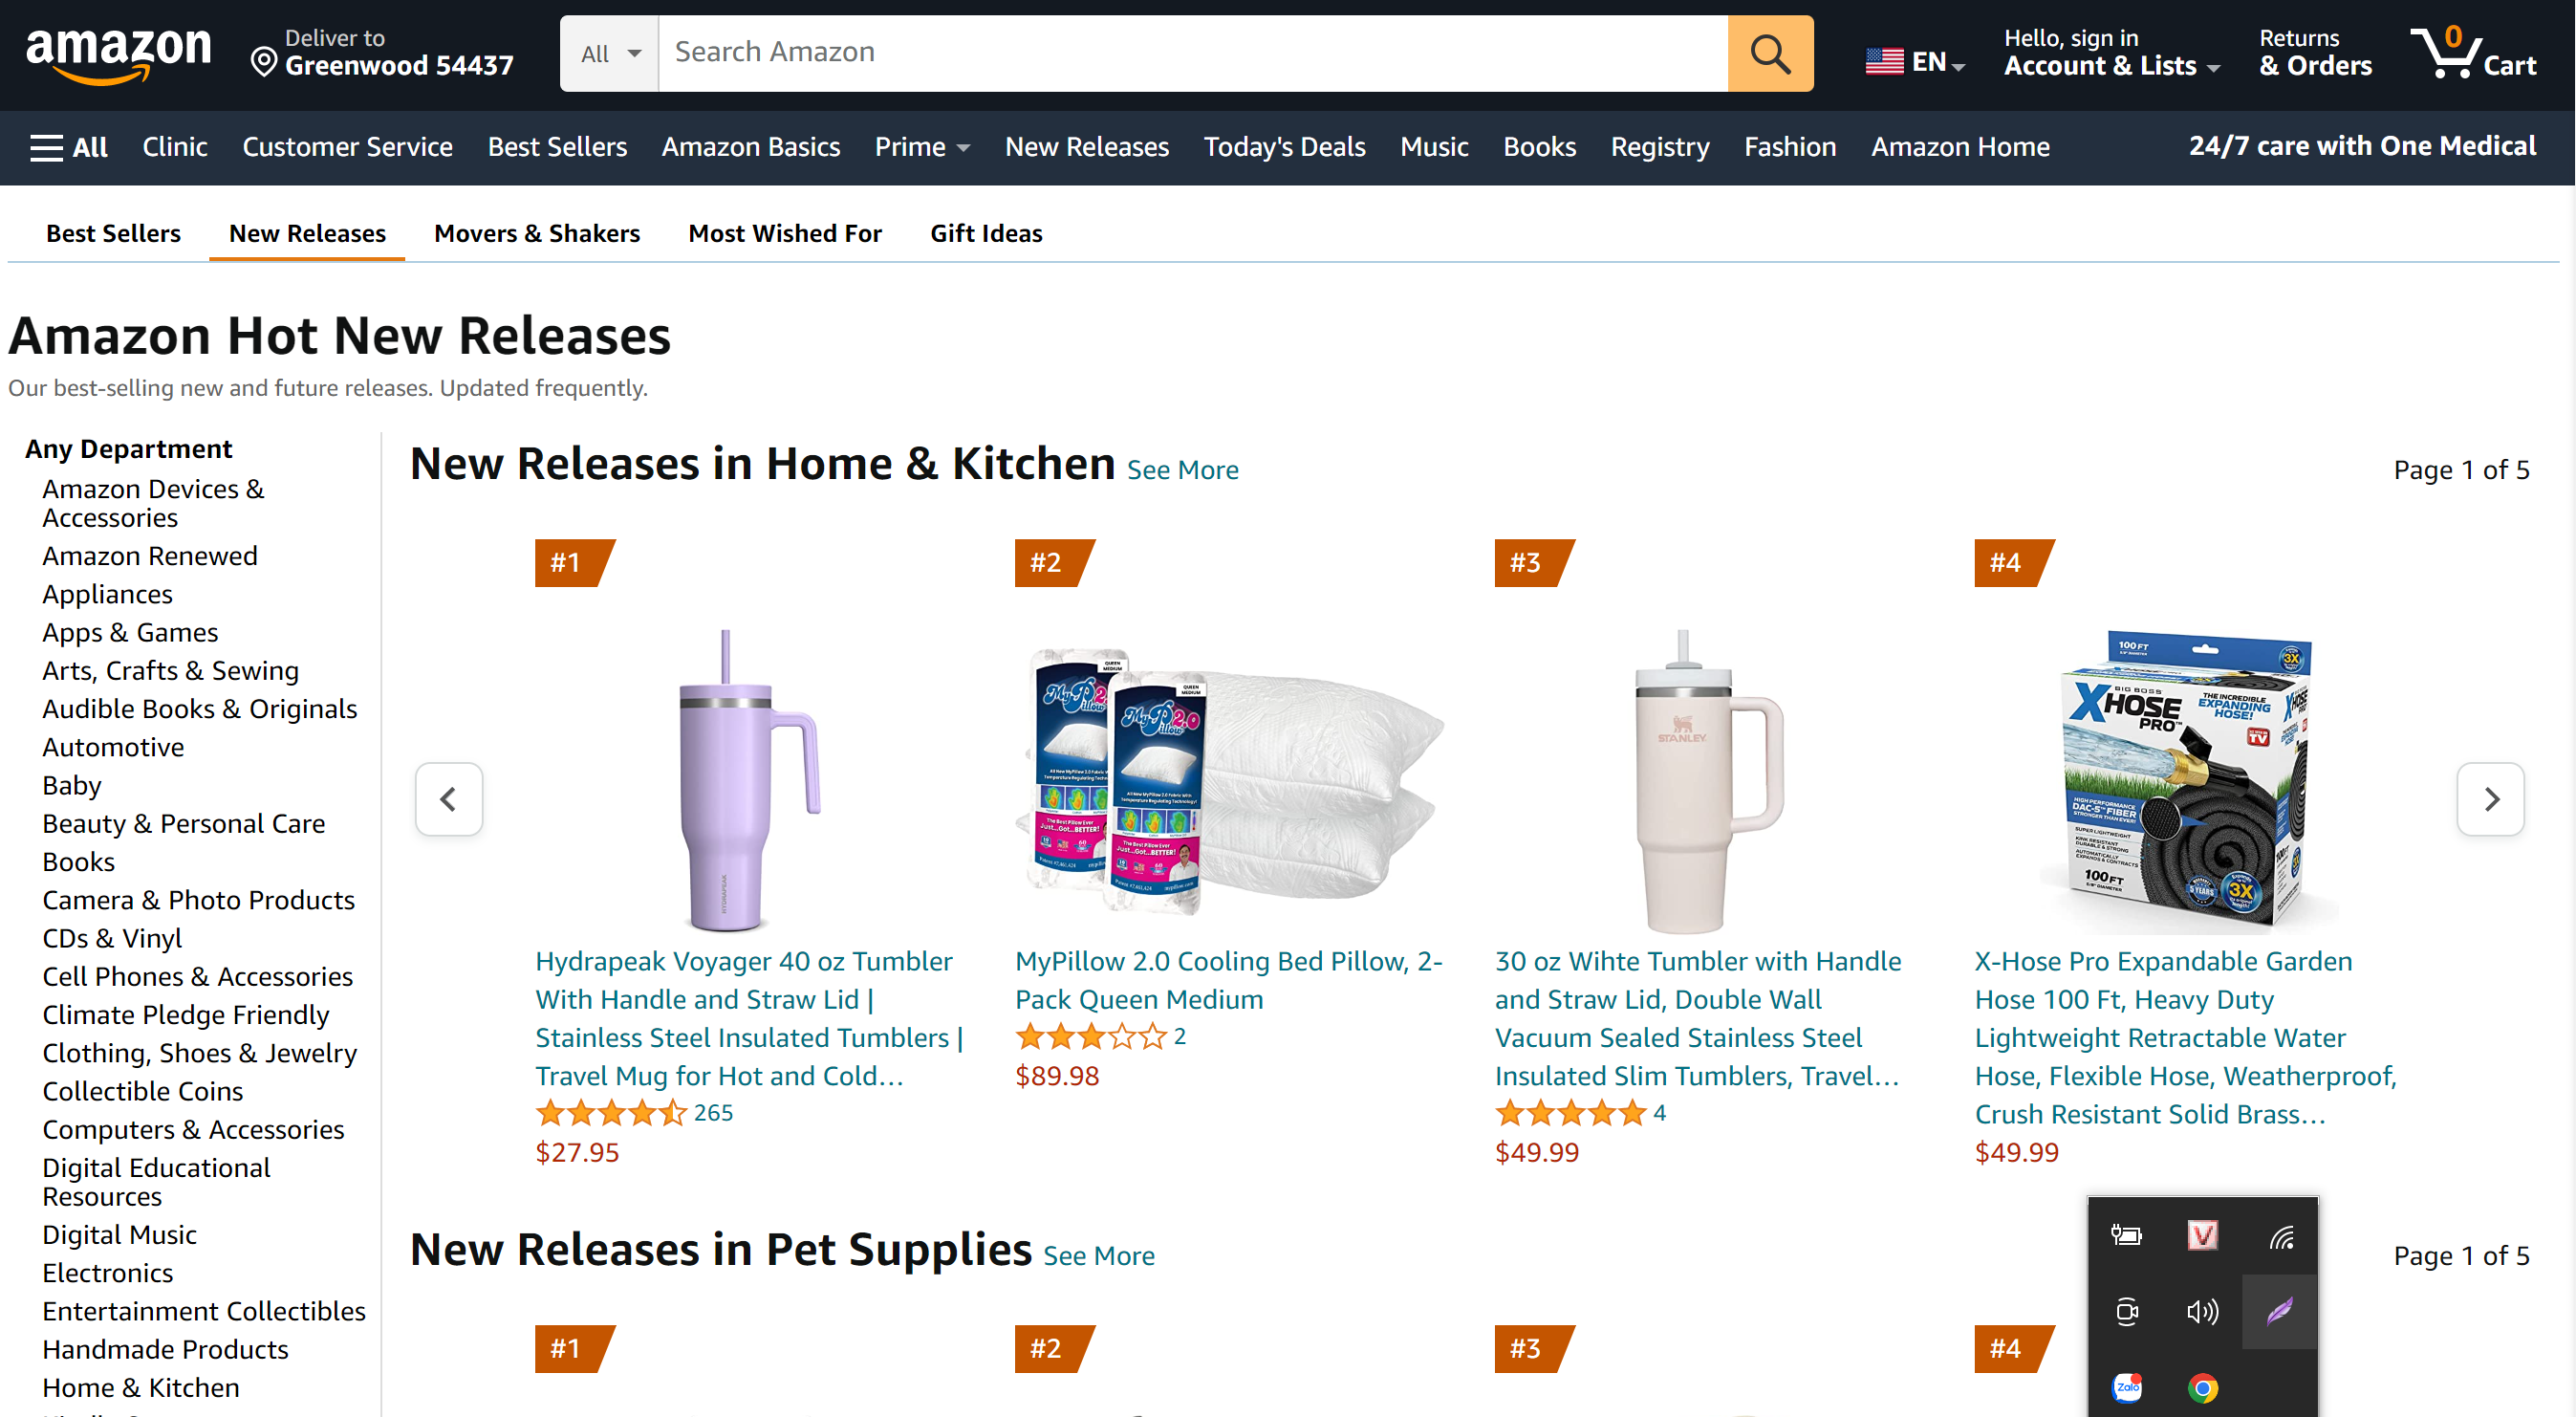 nâng cao lợi nhuận với eBay dropshipping khi chọn nguồn hàng Amazon